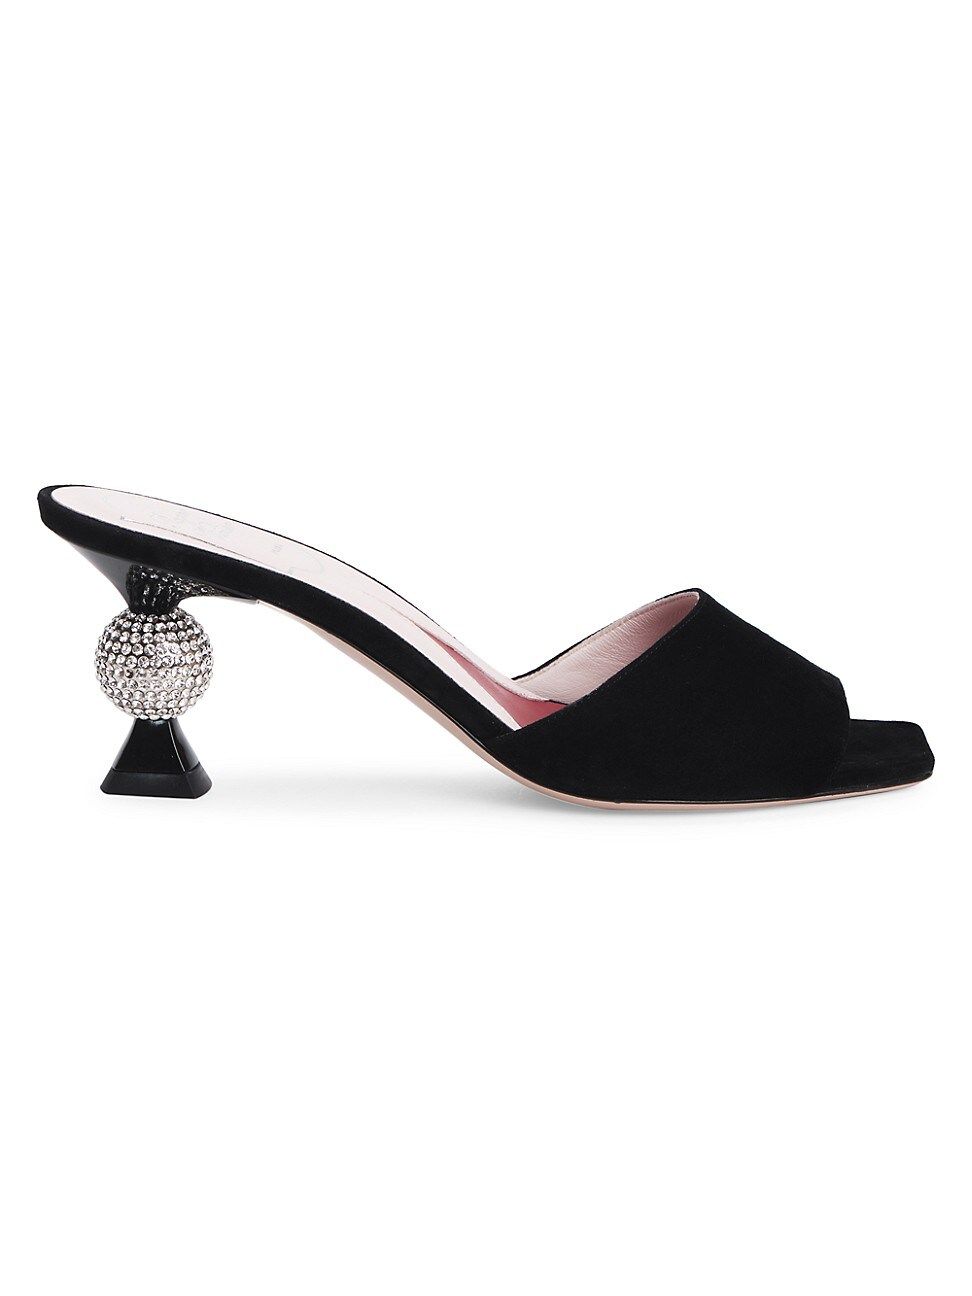 Roger Vivier Women's Marlene Embellished-Heel Suede Mules - Black - Size 7 | Saks Fifth Avenue